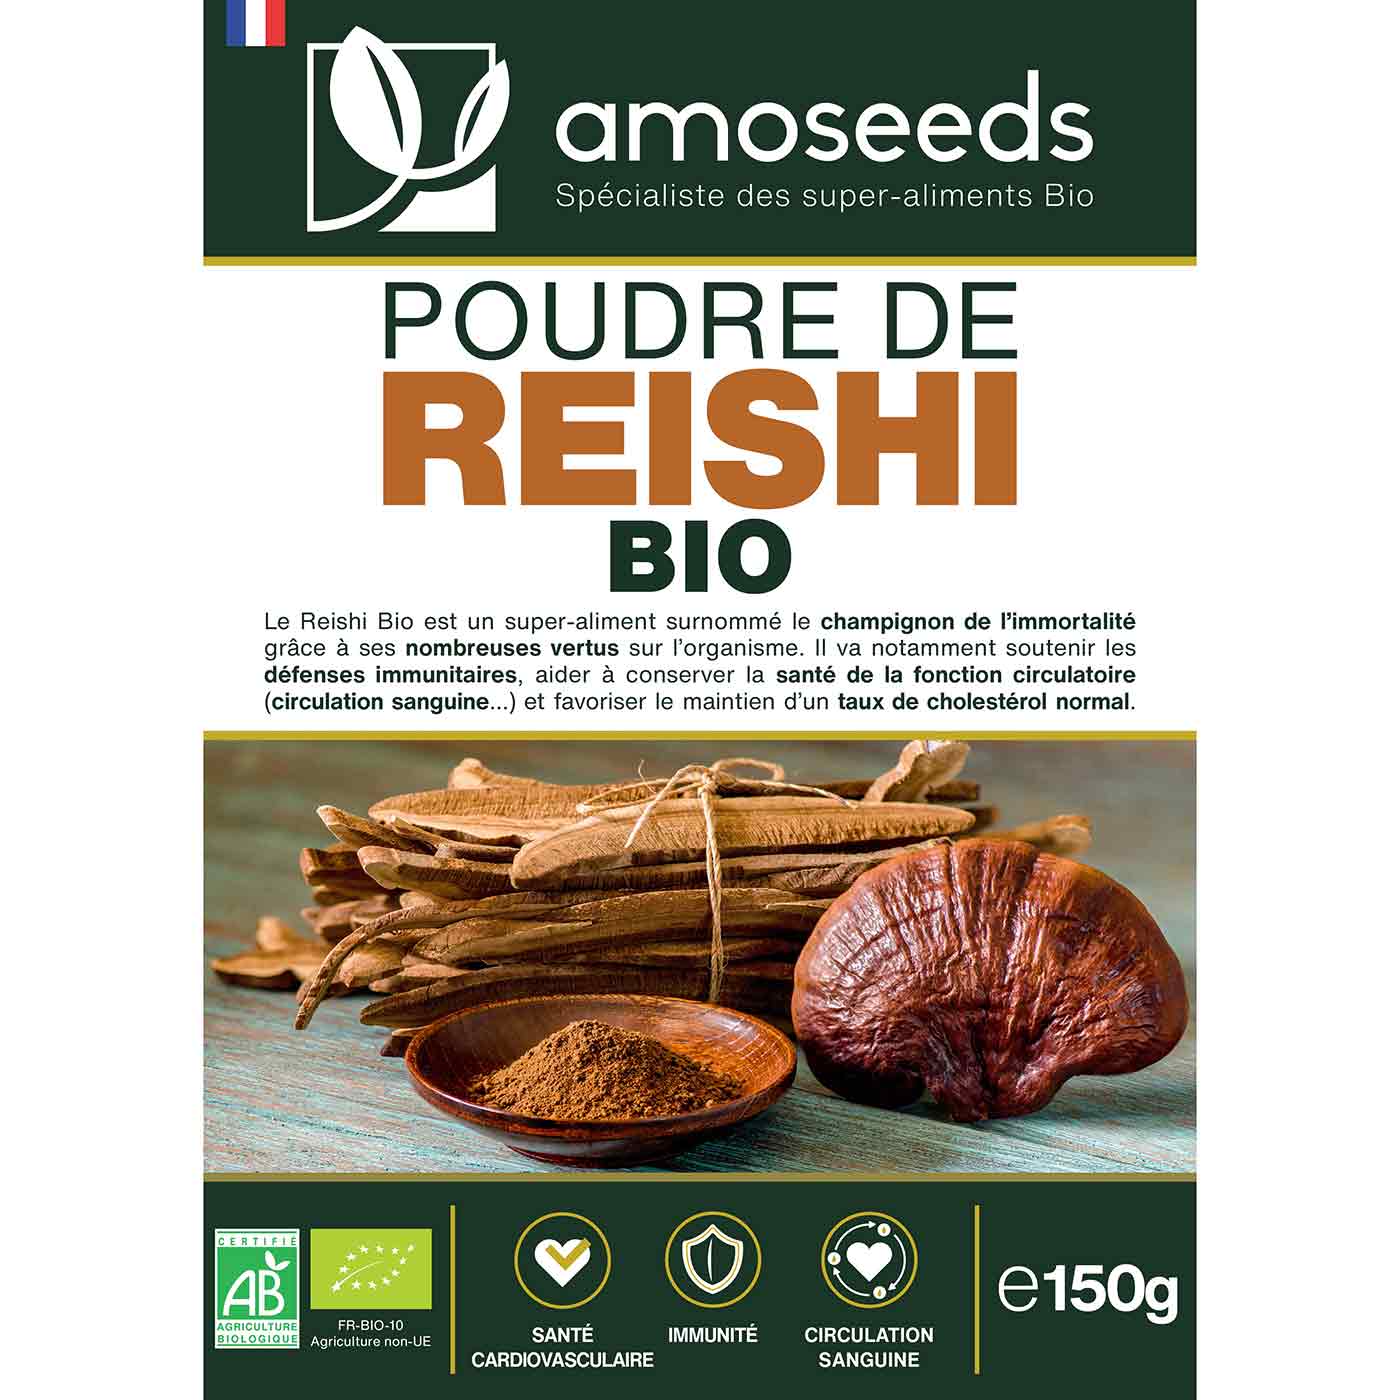 Reishi en poudre bio 150G amoseeds specialiste des super aliments Bio